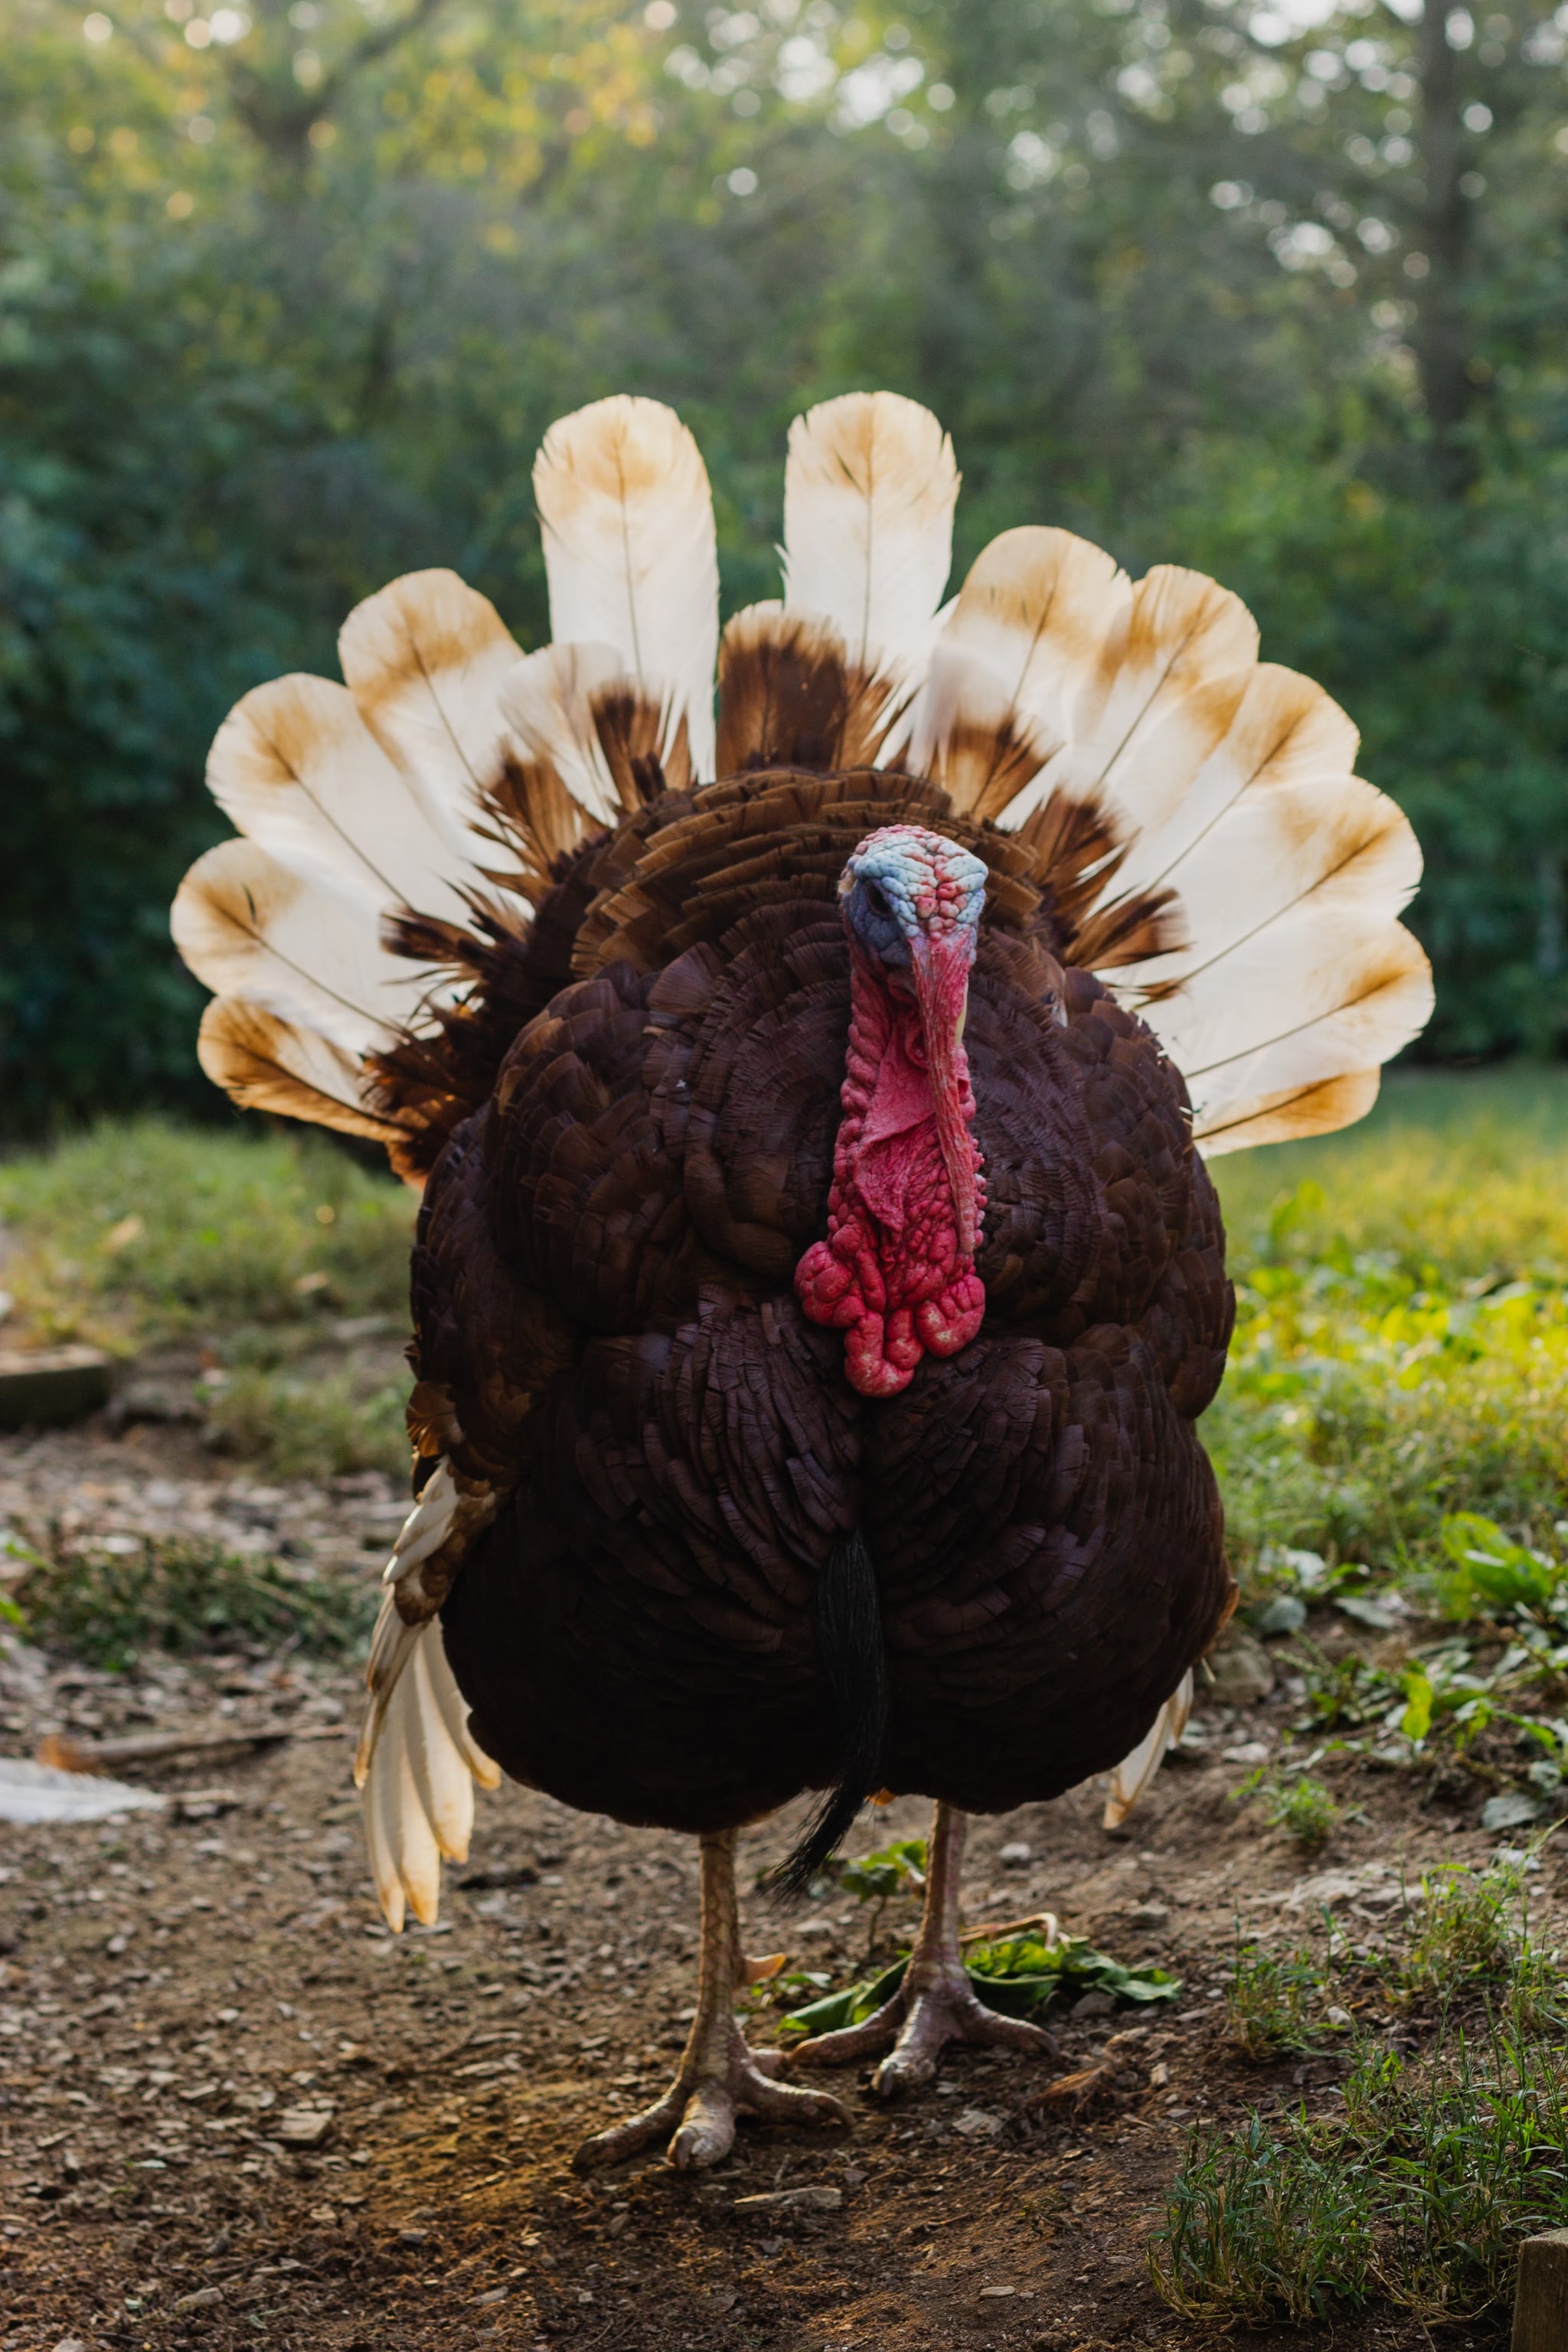 Thanksgiving Turkey Wallpaper Images  Free Download on Freepik